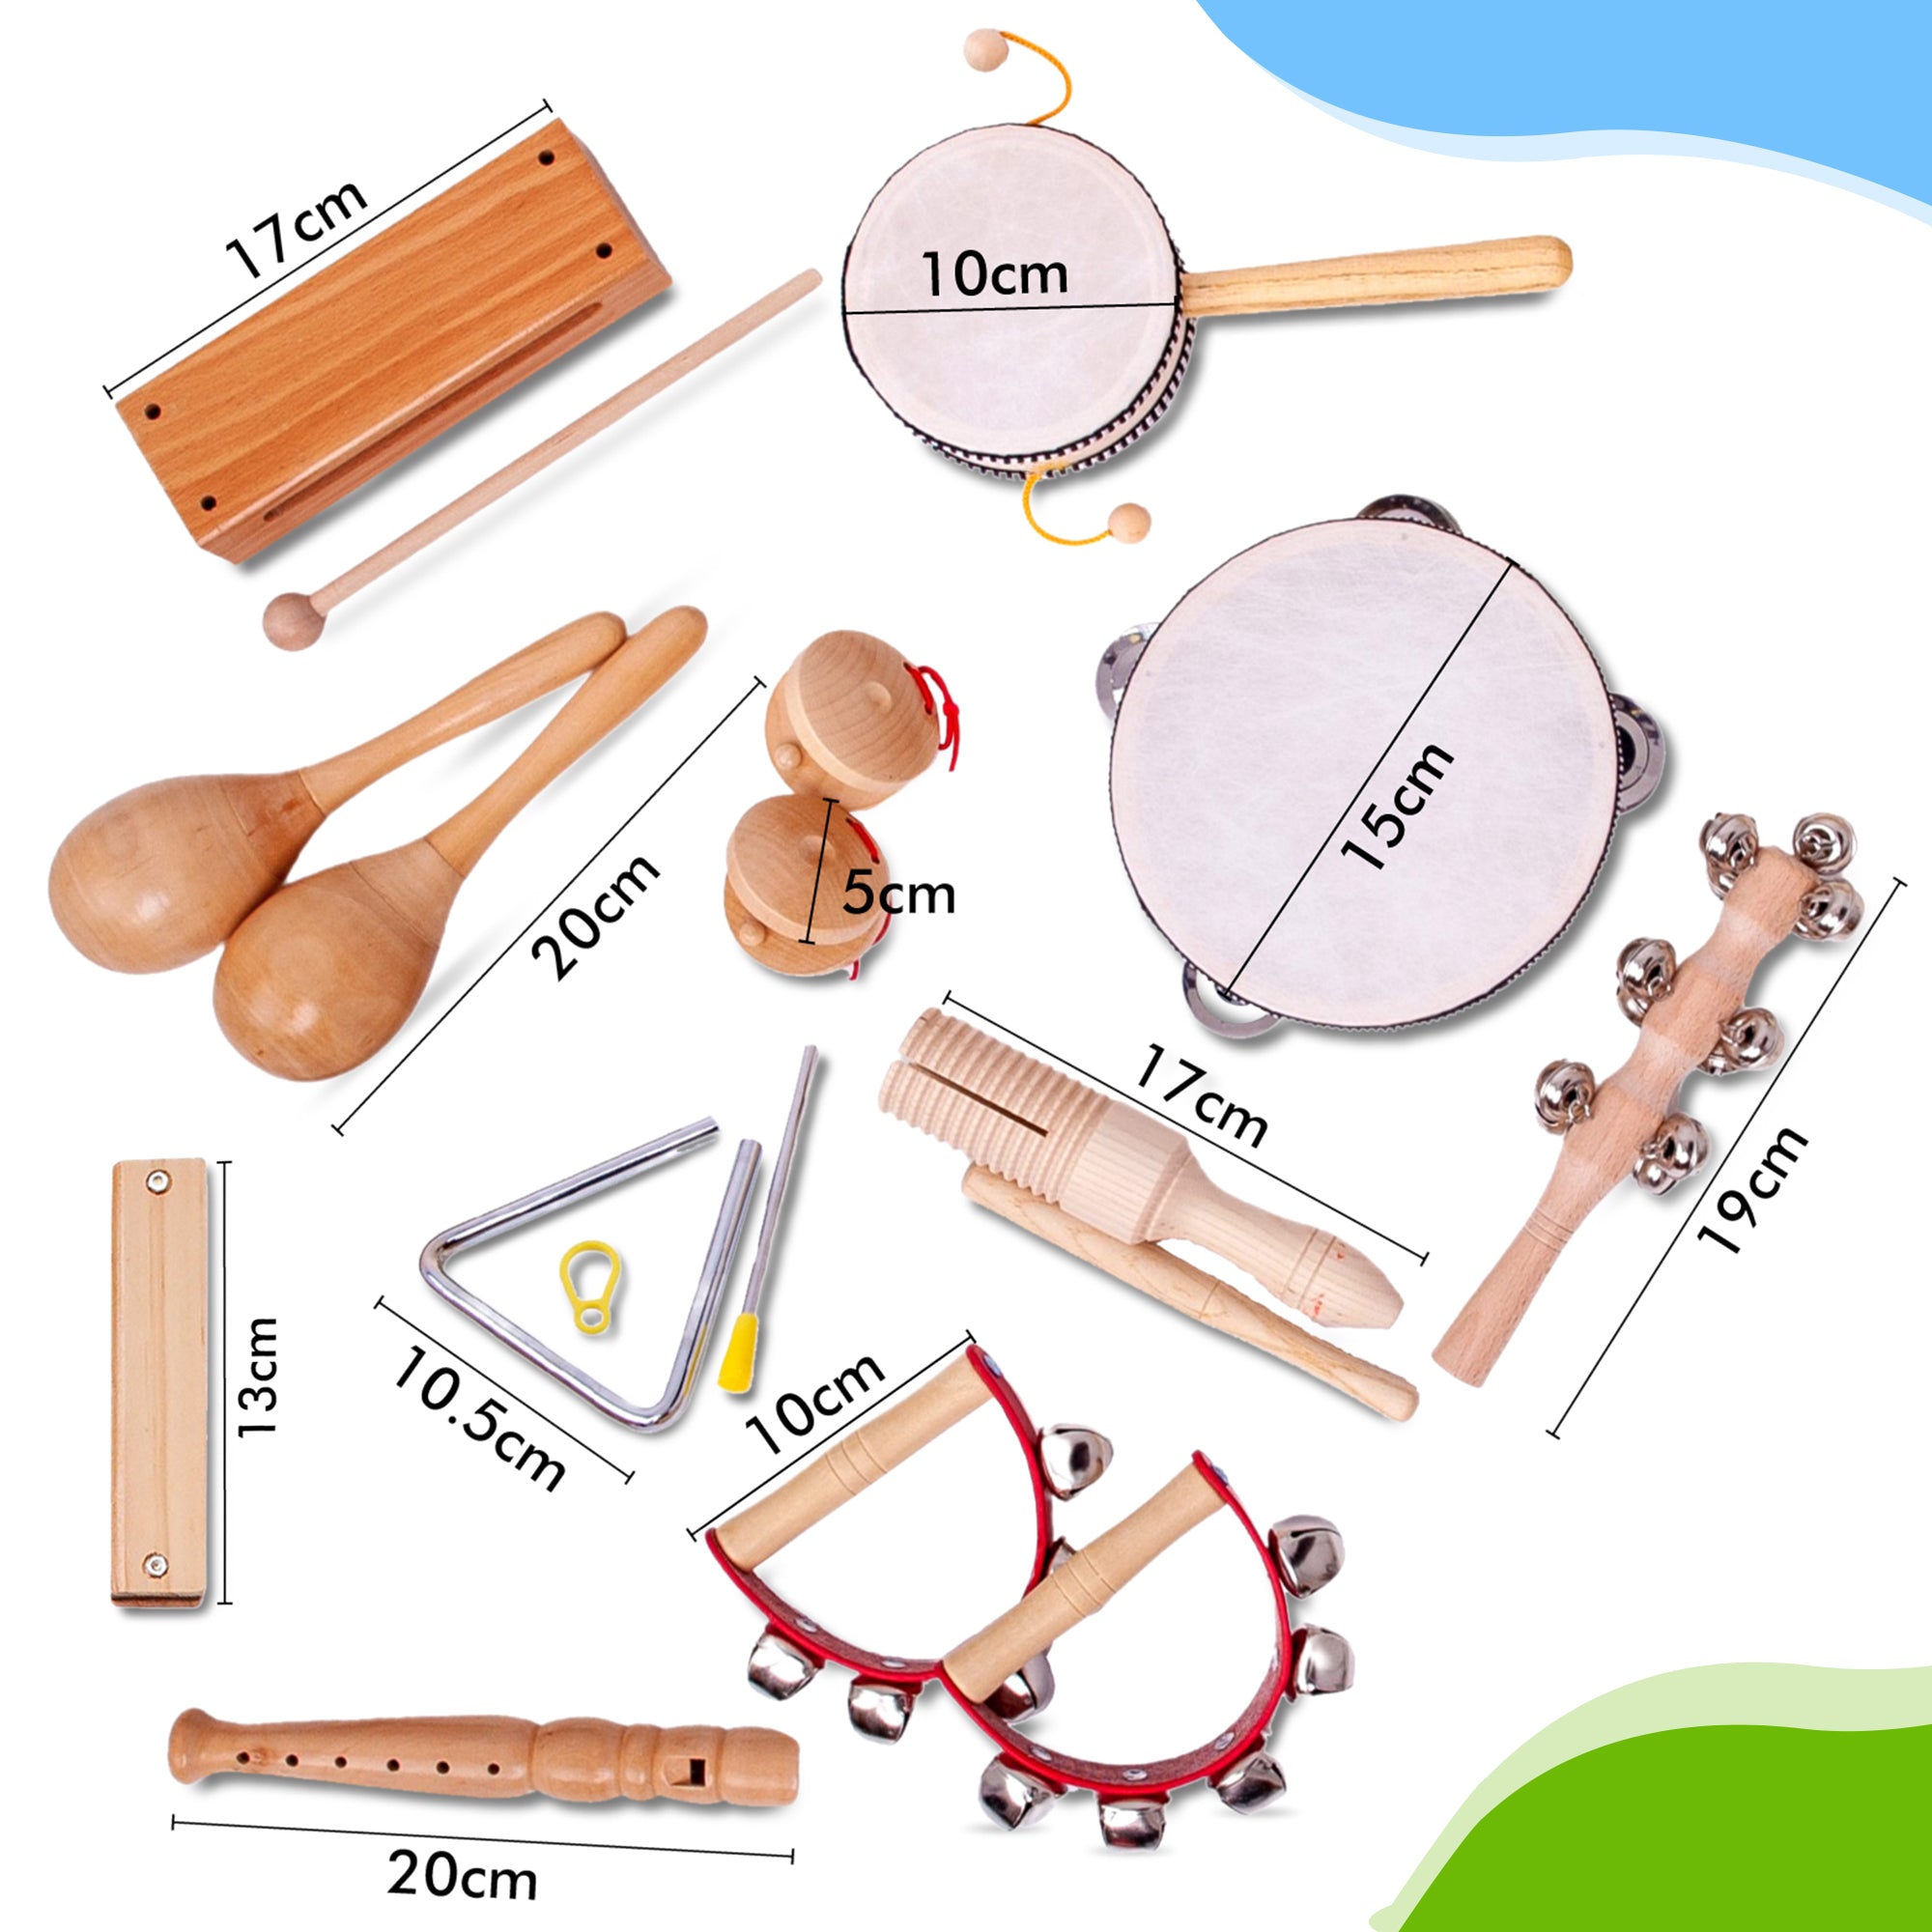 Estas são as dimensões dos instrumentos de brinquedo de madeira, feitos especialmente para crianças. Encomende-os agora mesmo e toque esta flauta doce ou gaita de madeira amanhã. Você pode escolher seu próprio instrumento de brinquedo